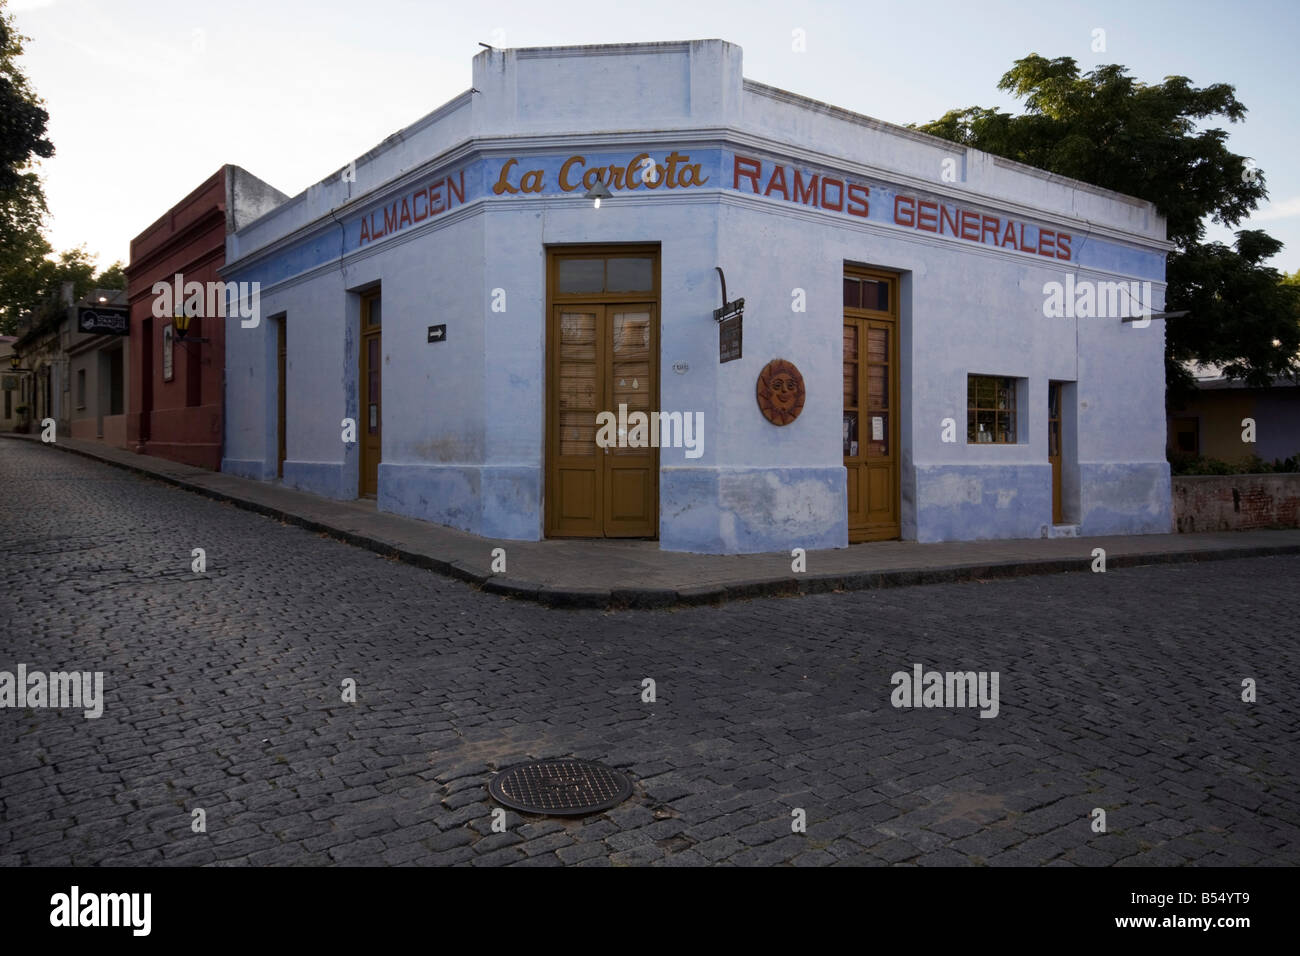 La Carlota Almacen general store in the historic town of Colonia del Sacramento Uruguay Stock Photo